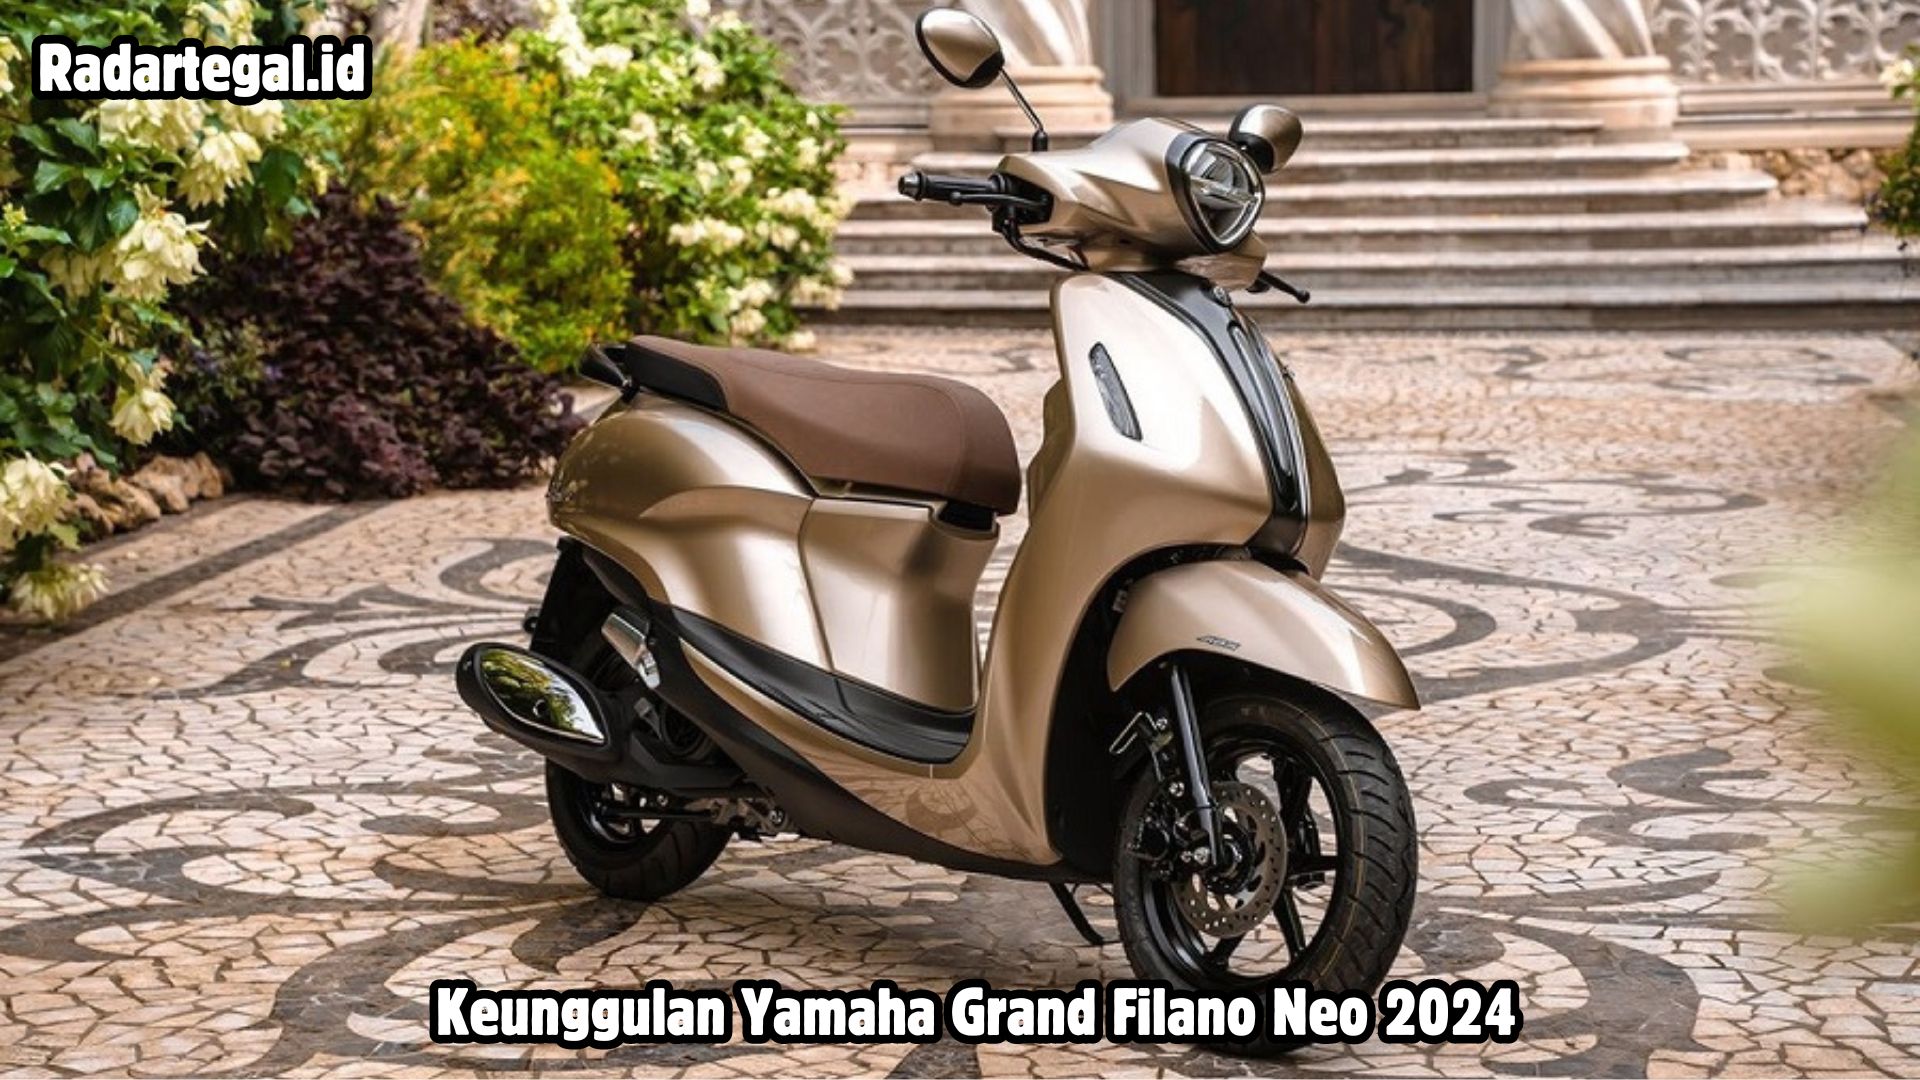 Keunggulan Yamaha Grand Filano Neo 2024, Skuter Pendatang Baru yang Punya Penampilan Menawan dan Fitur Canggih